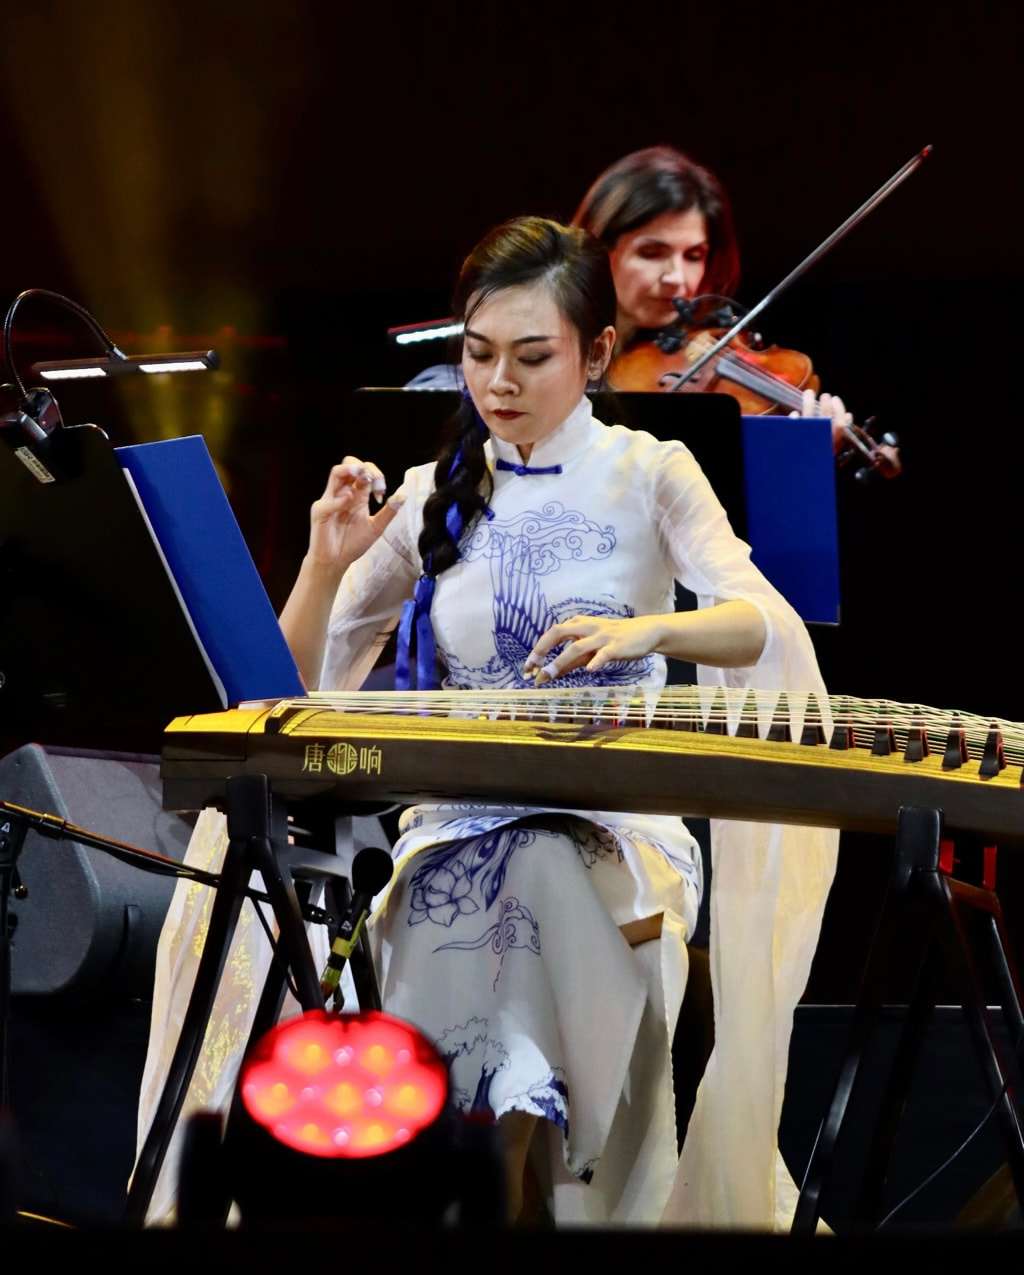 guzheng performance overseas by top guzheng player Qing Du 